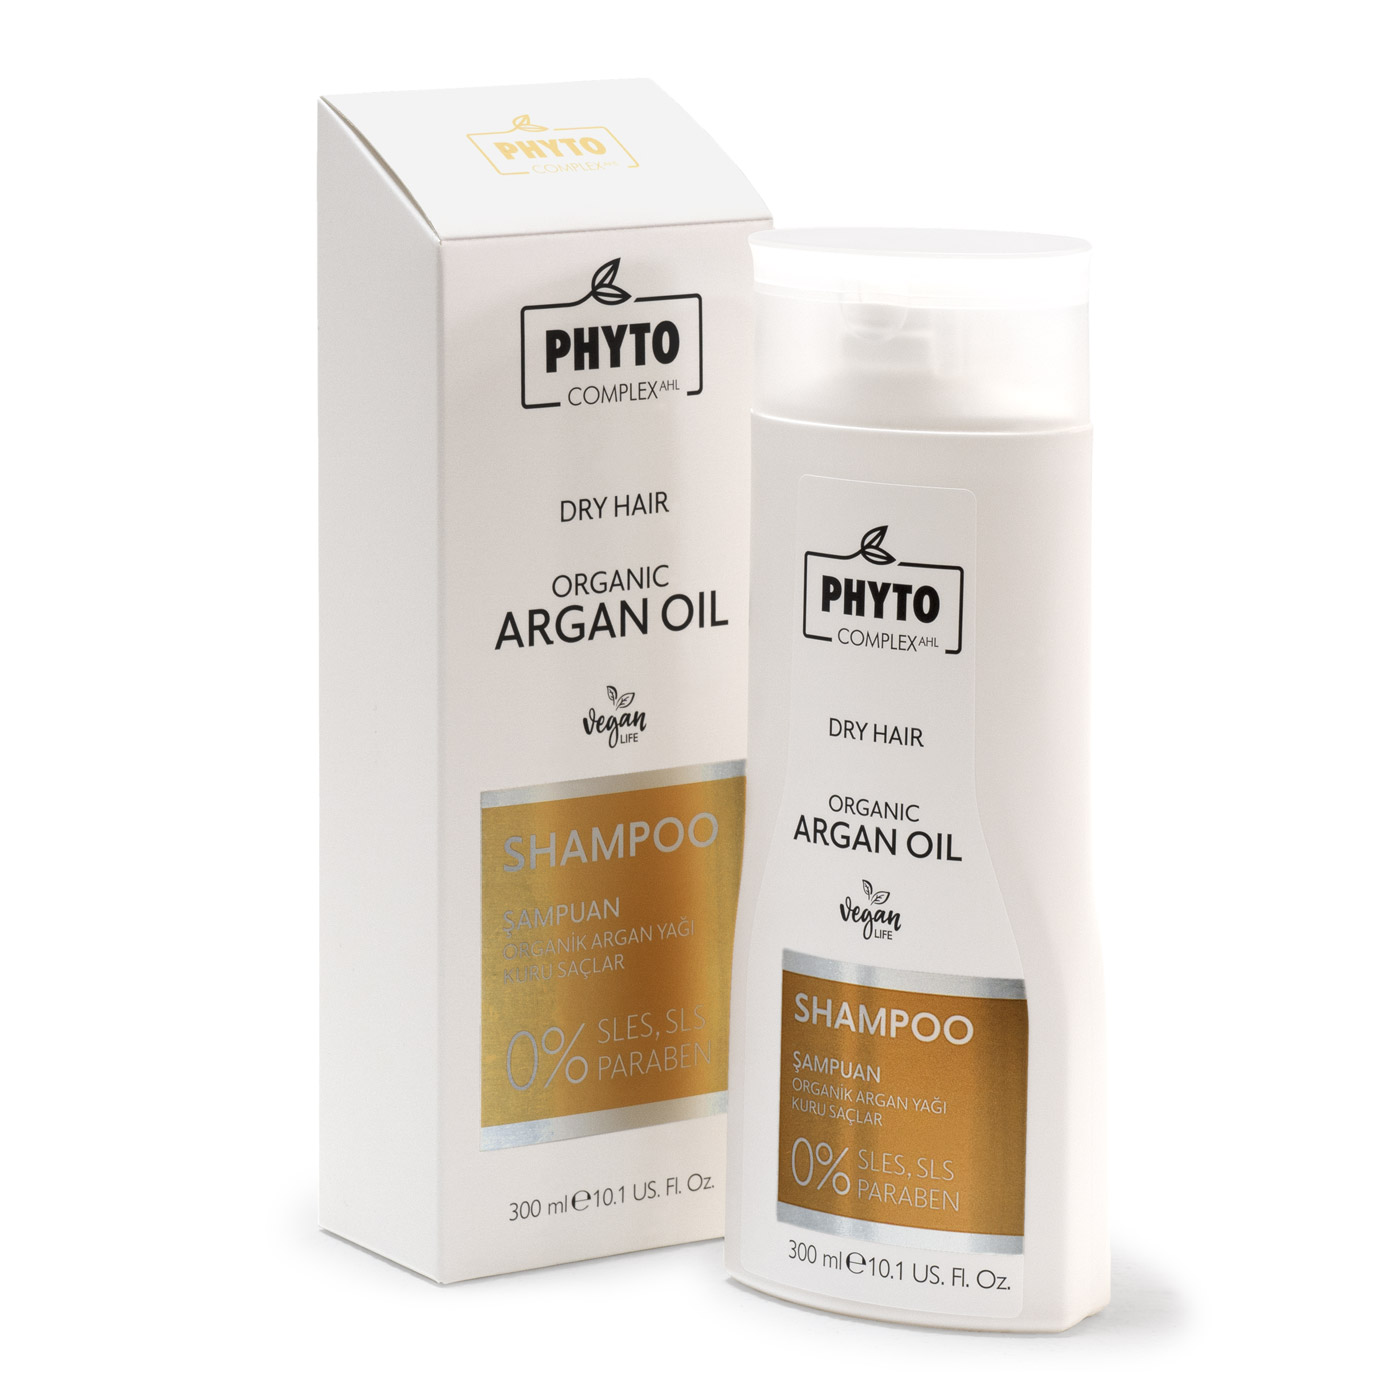 Натуральный шампунь Phytocomplex для сухих волос Organic Argan Dry Hair шампунь для сухих волос nourishing shampoo for dry hair 6441es 1000 мл